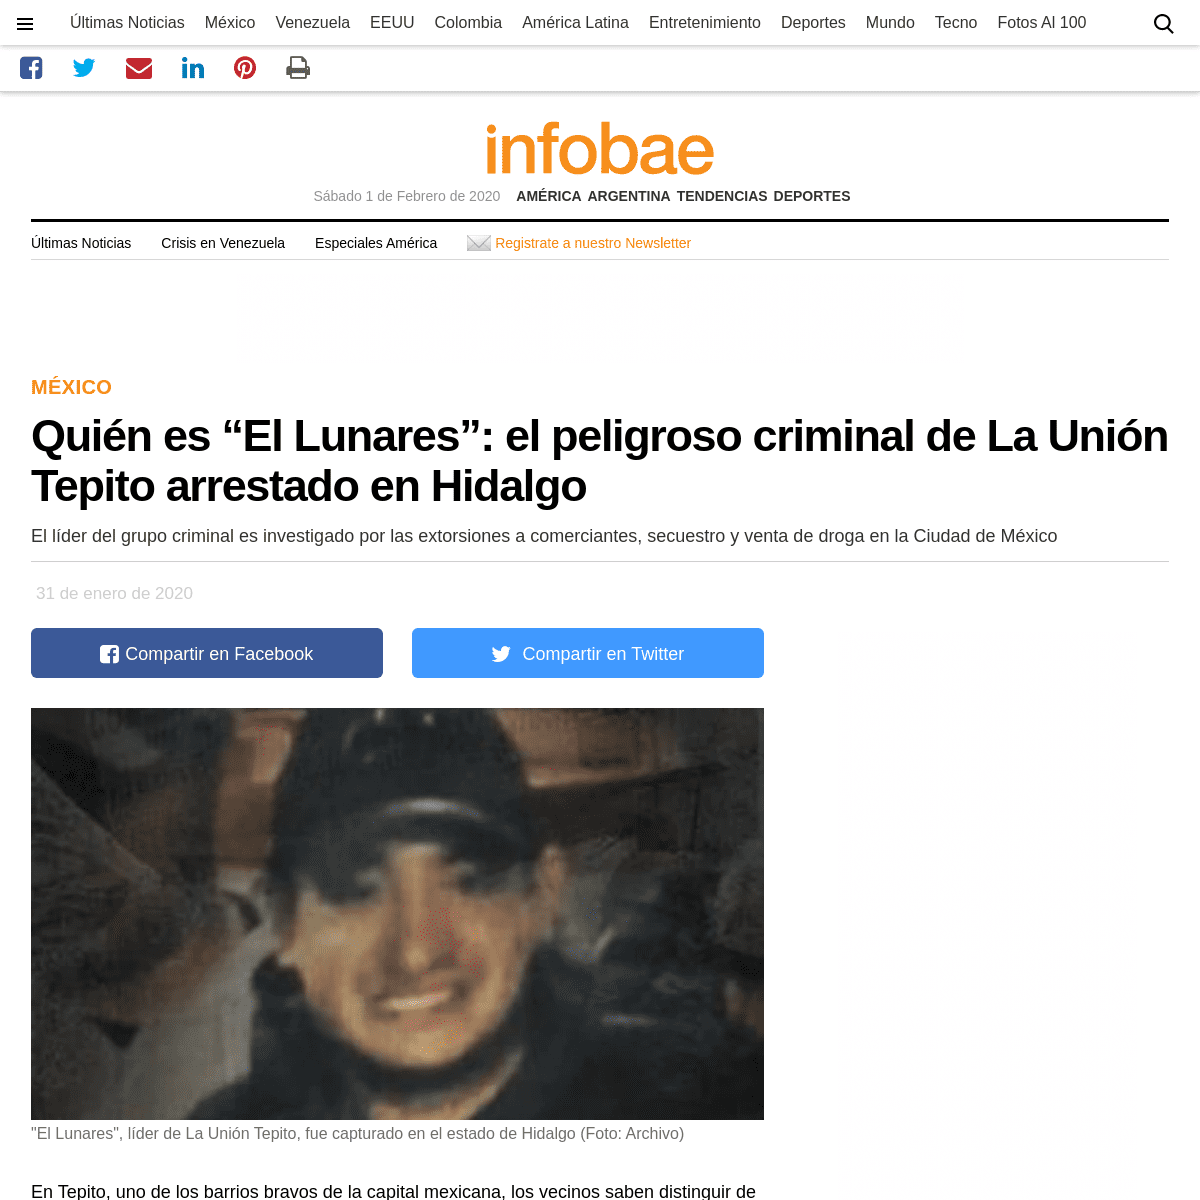 A complete backup of www.infobae.com/america/mexico/2020/01/31/quien-es-el-lunares-el-peligroso-criminal-de-la-union-tepito-arre